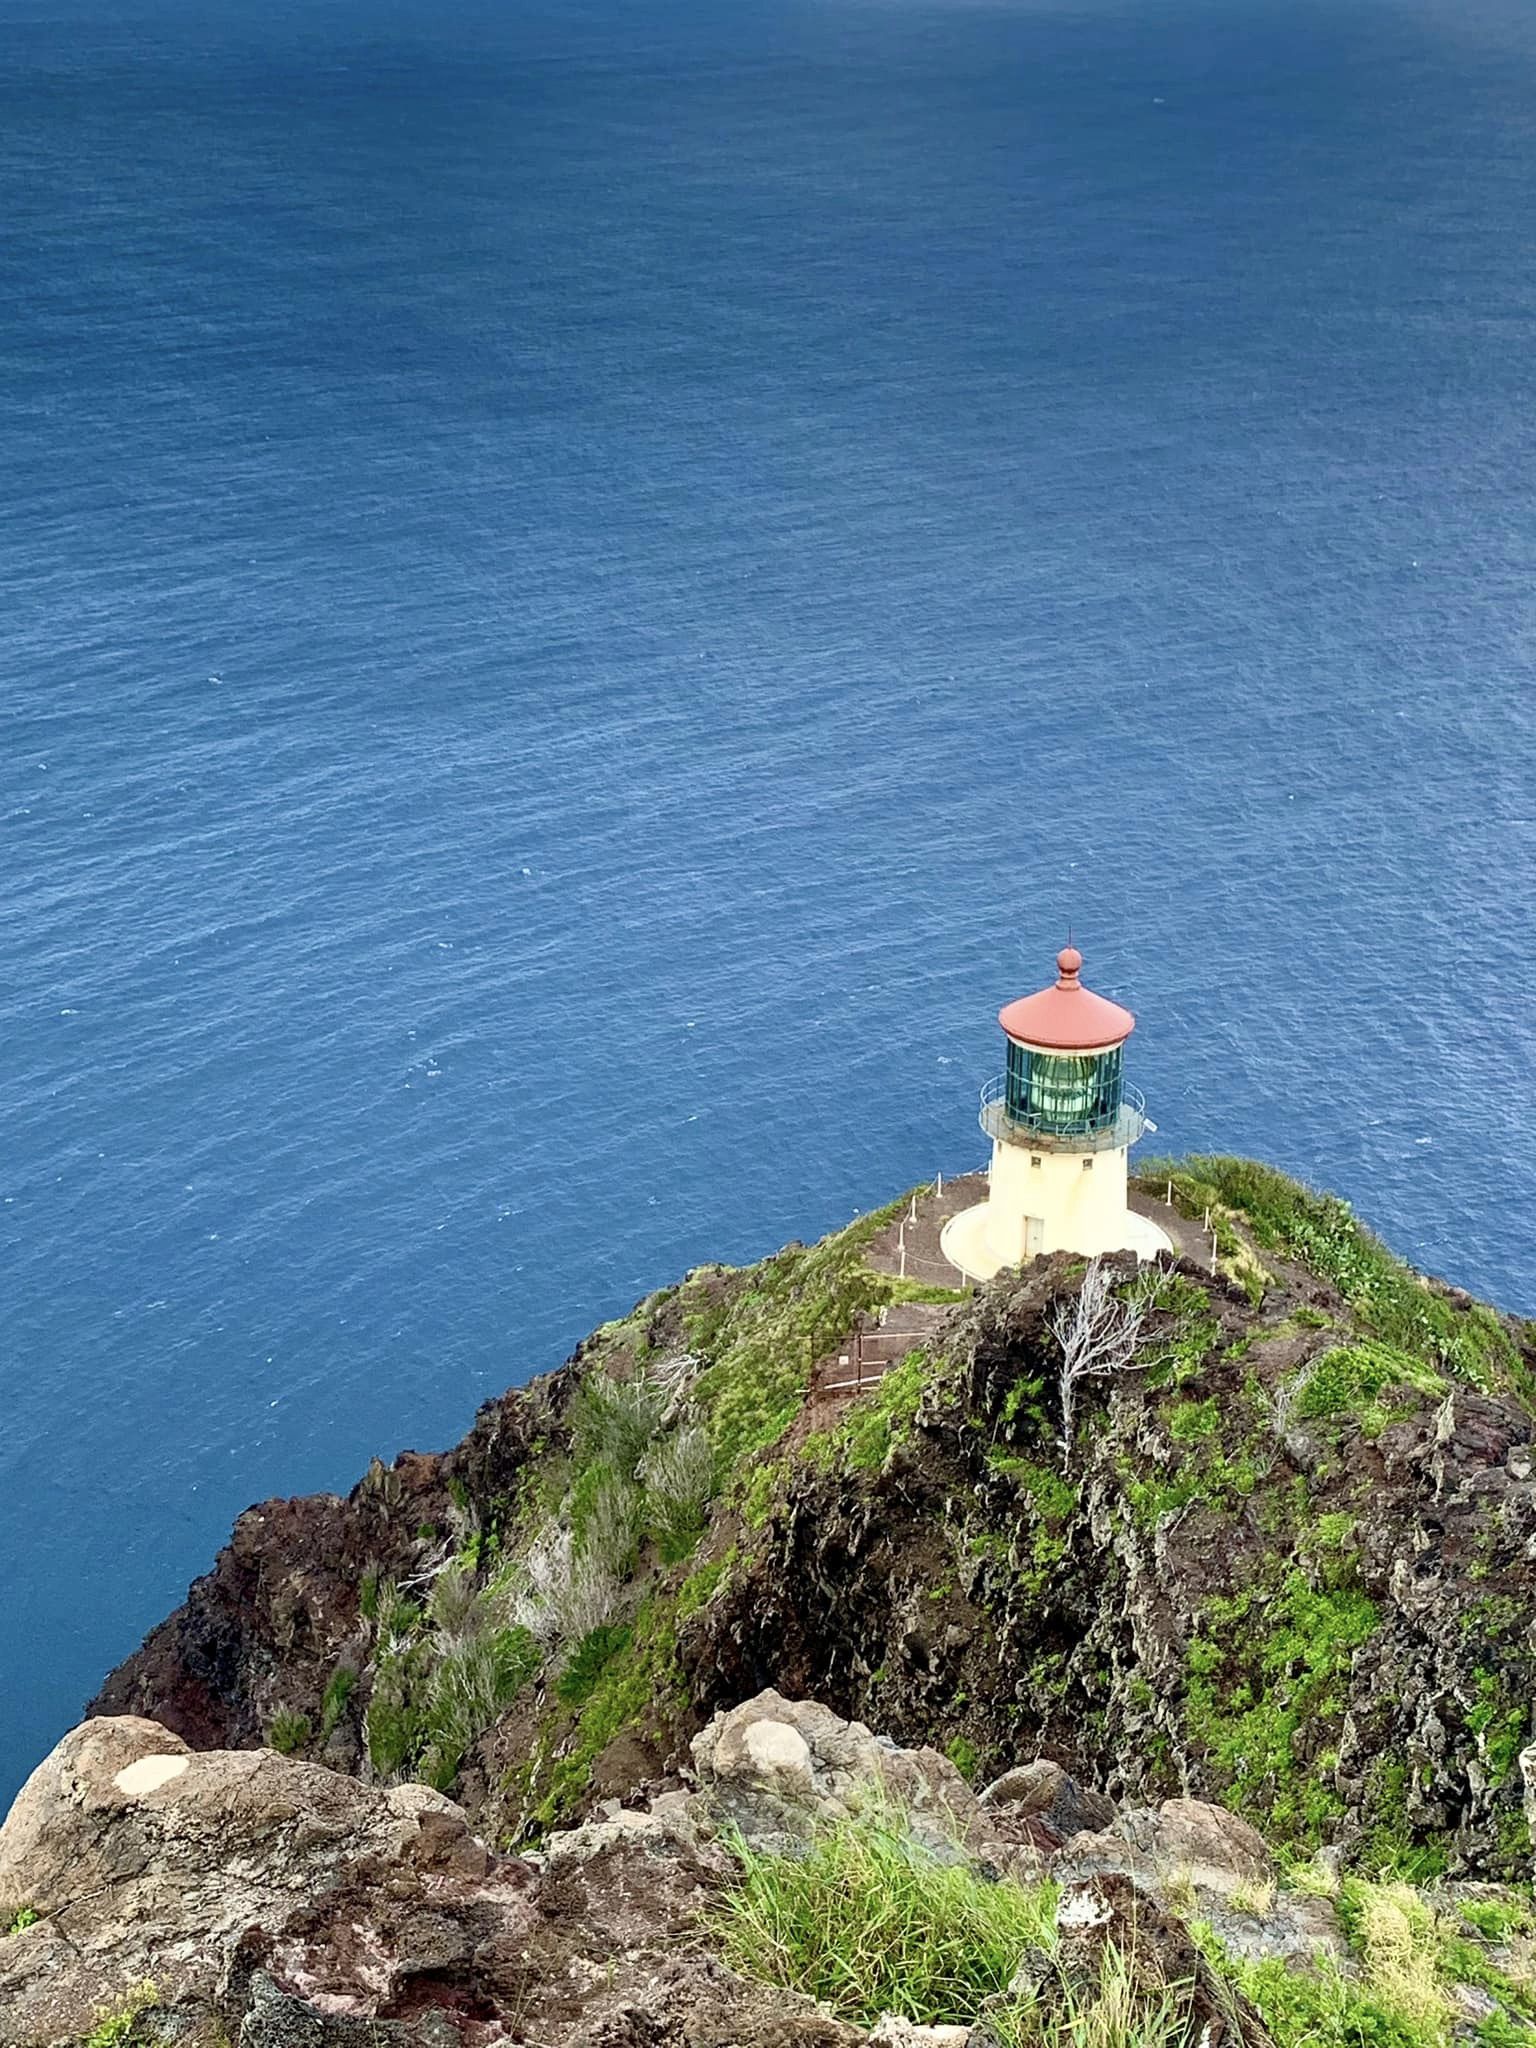 The Makapu'u Point Lighthouse on the island of Oahu, Hawaii.